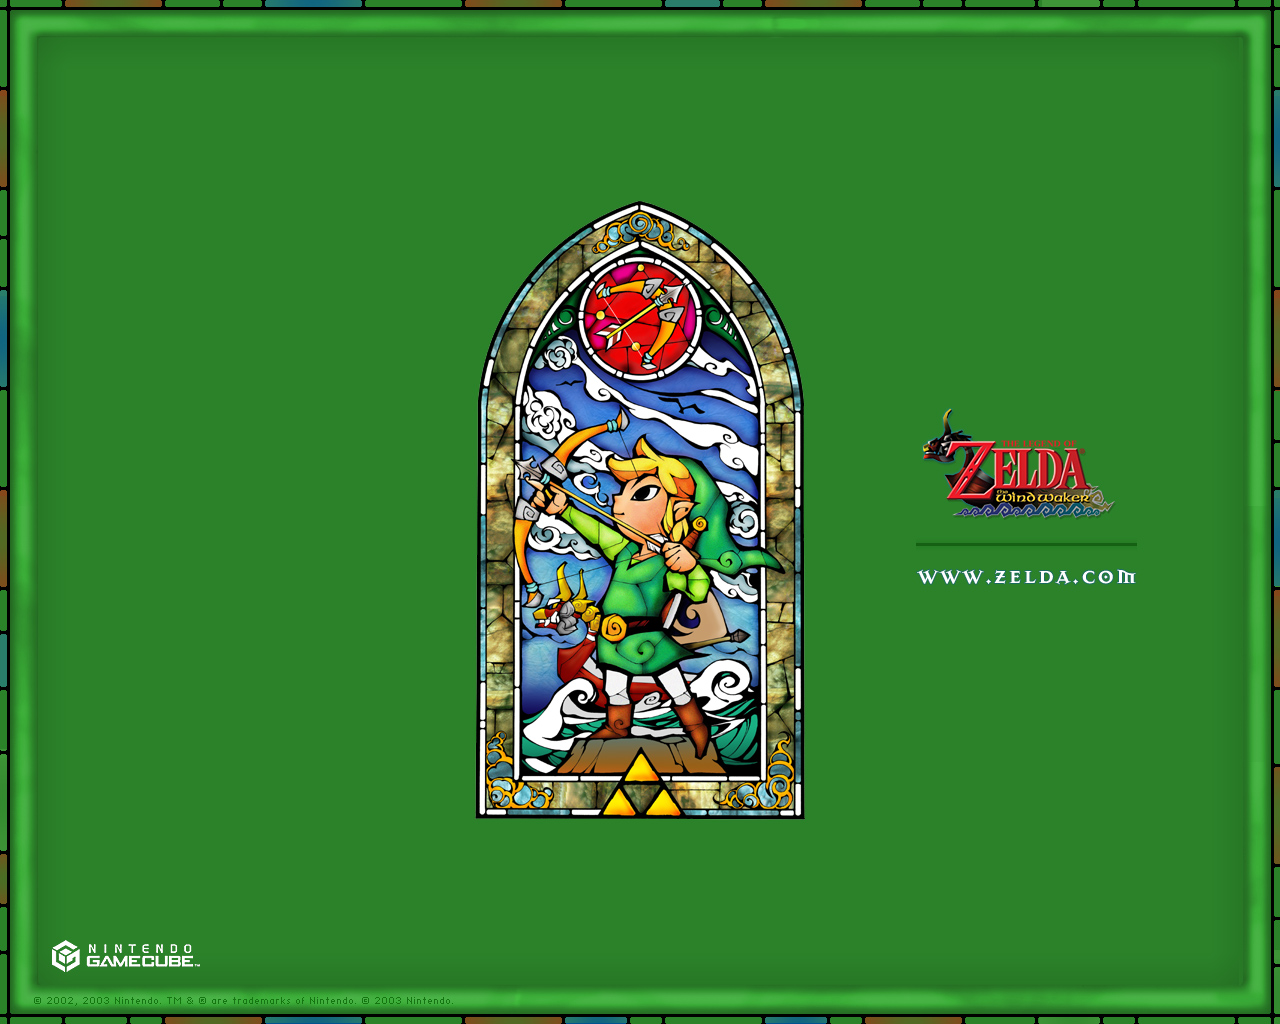 Zelda The Wind Waker   Official Wallpapers Desktops Backgrounds